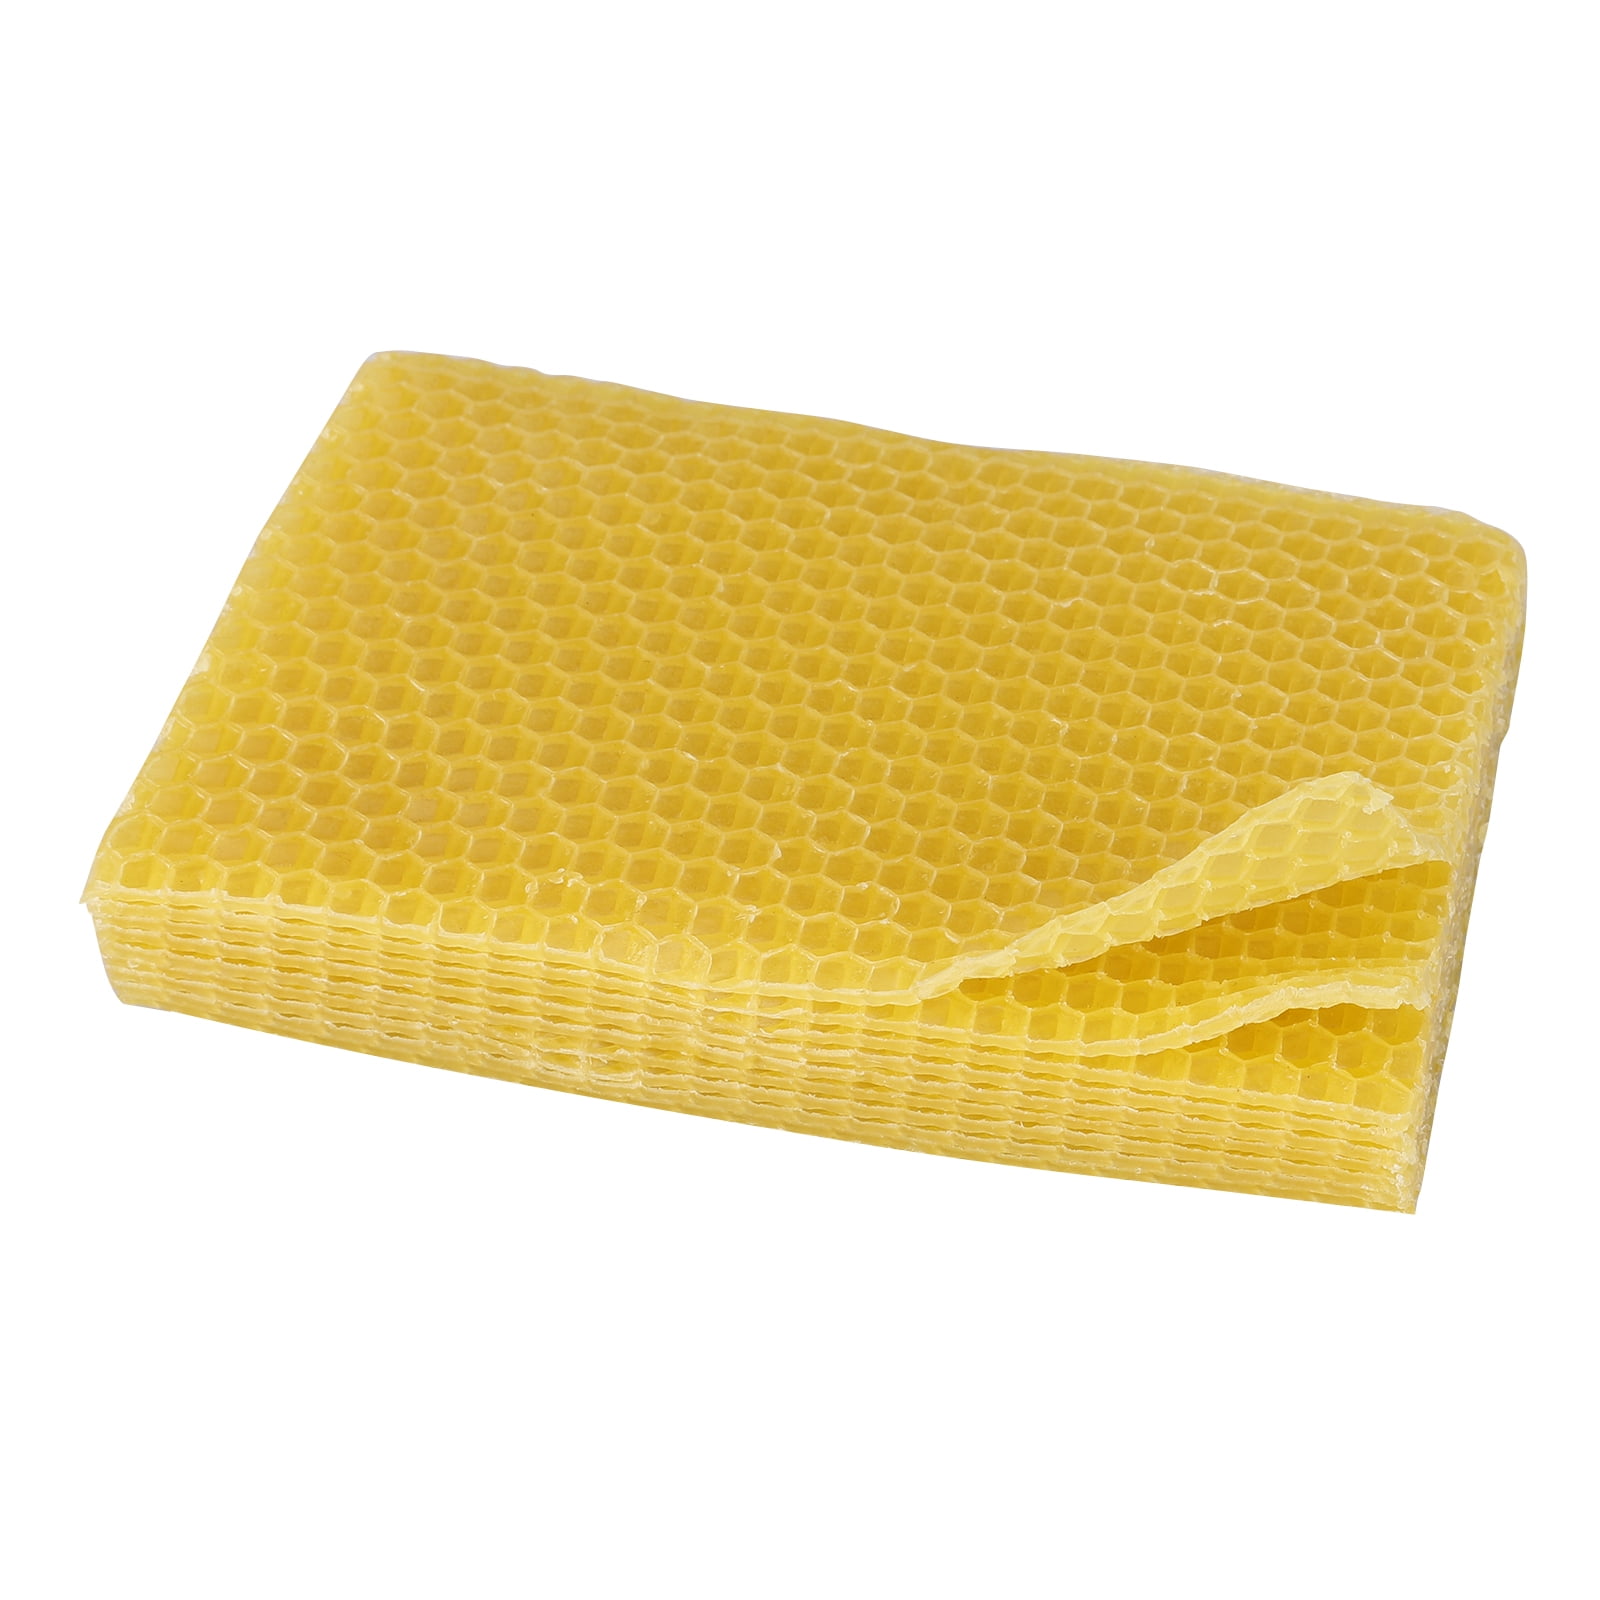 10X Honeycomb Foundation Bee Hive Wax Frames Beekeeping Equipment Sheet Tool 